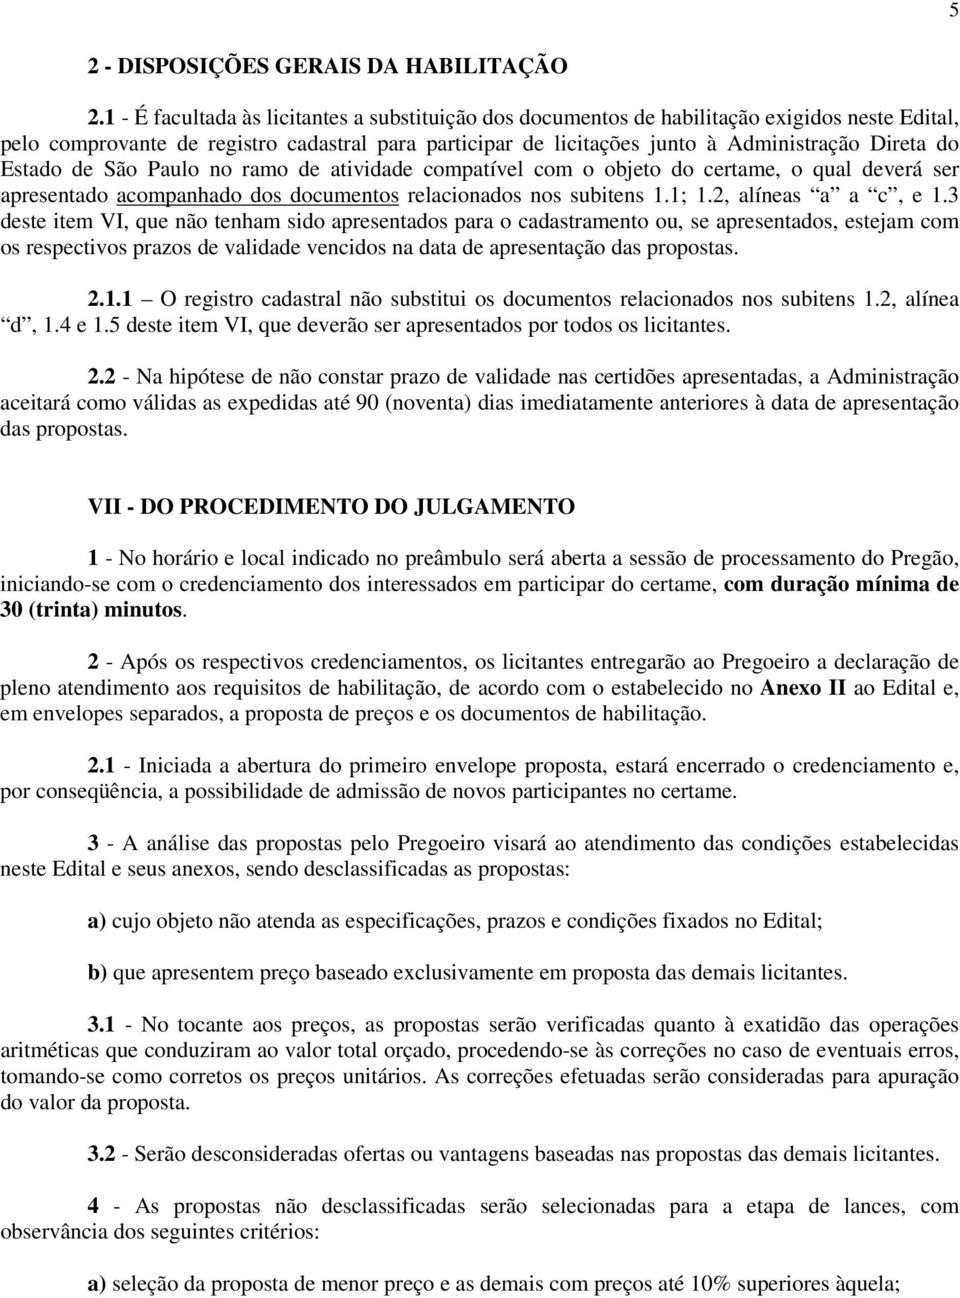 Estado de São Paulo no ramo de atividade compatível com o objeto do certame, o qual deverá ser apresentado acompanhado dos documentos relacionados nos subitens 1.1; 1.2, alíneas a a c, e 1.